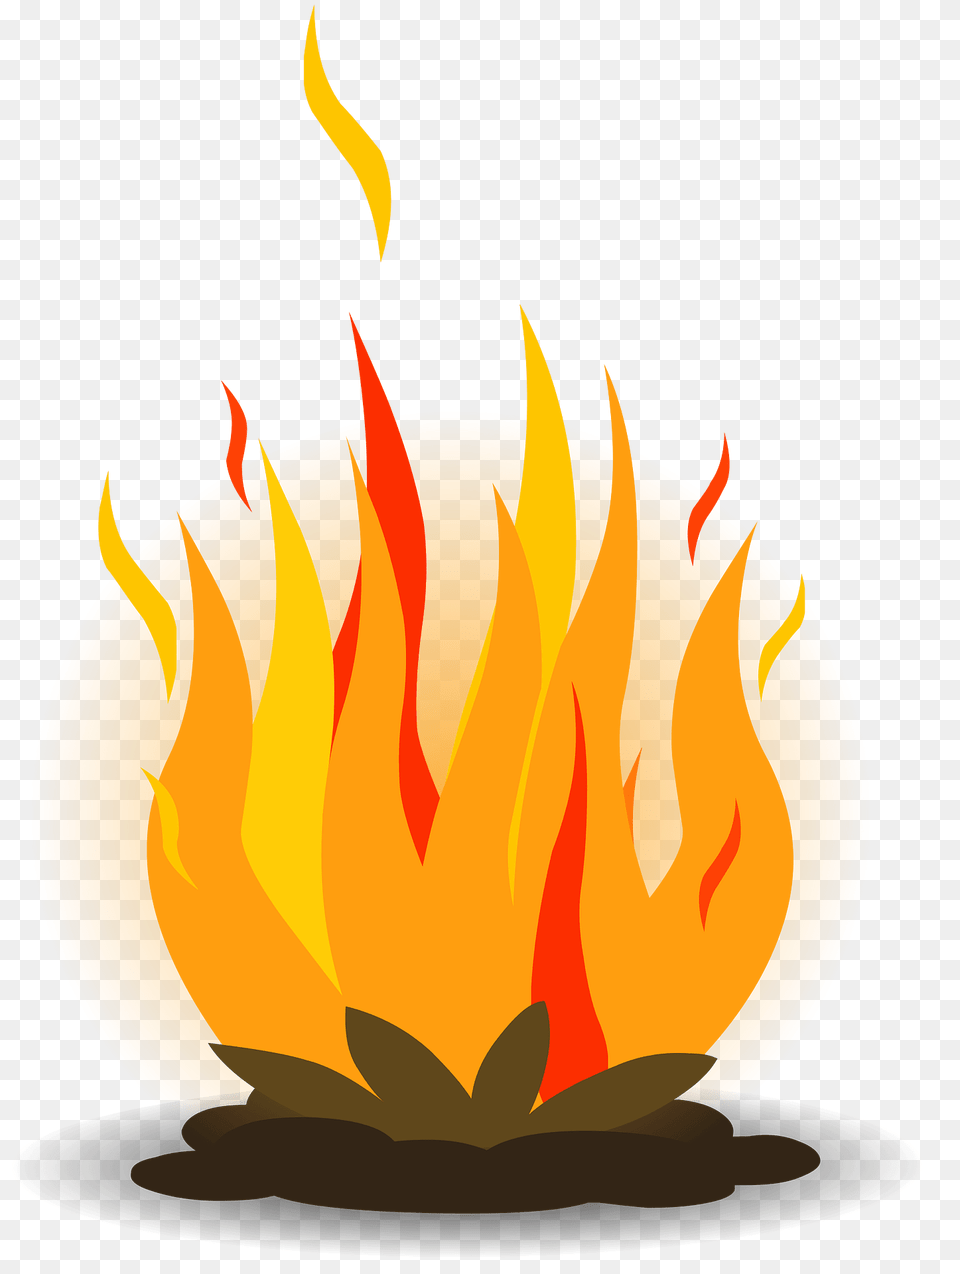 Fire Clipart, Flame, Bonfire Png Image